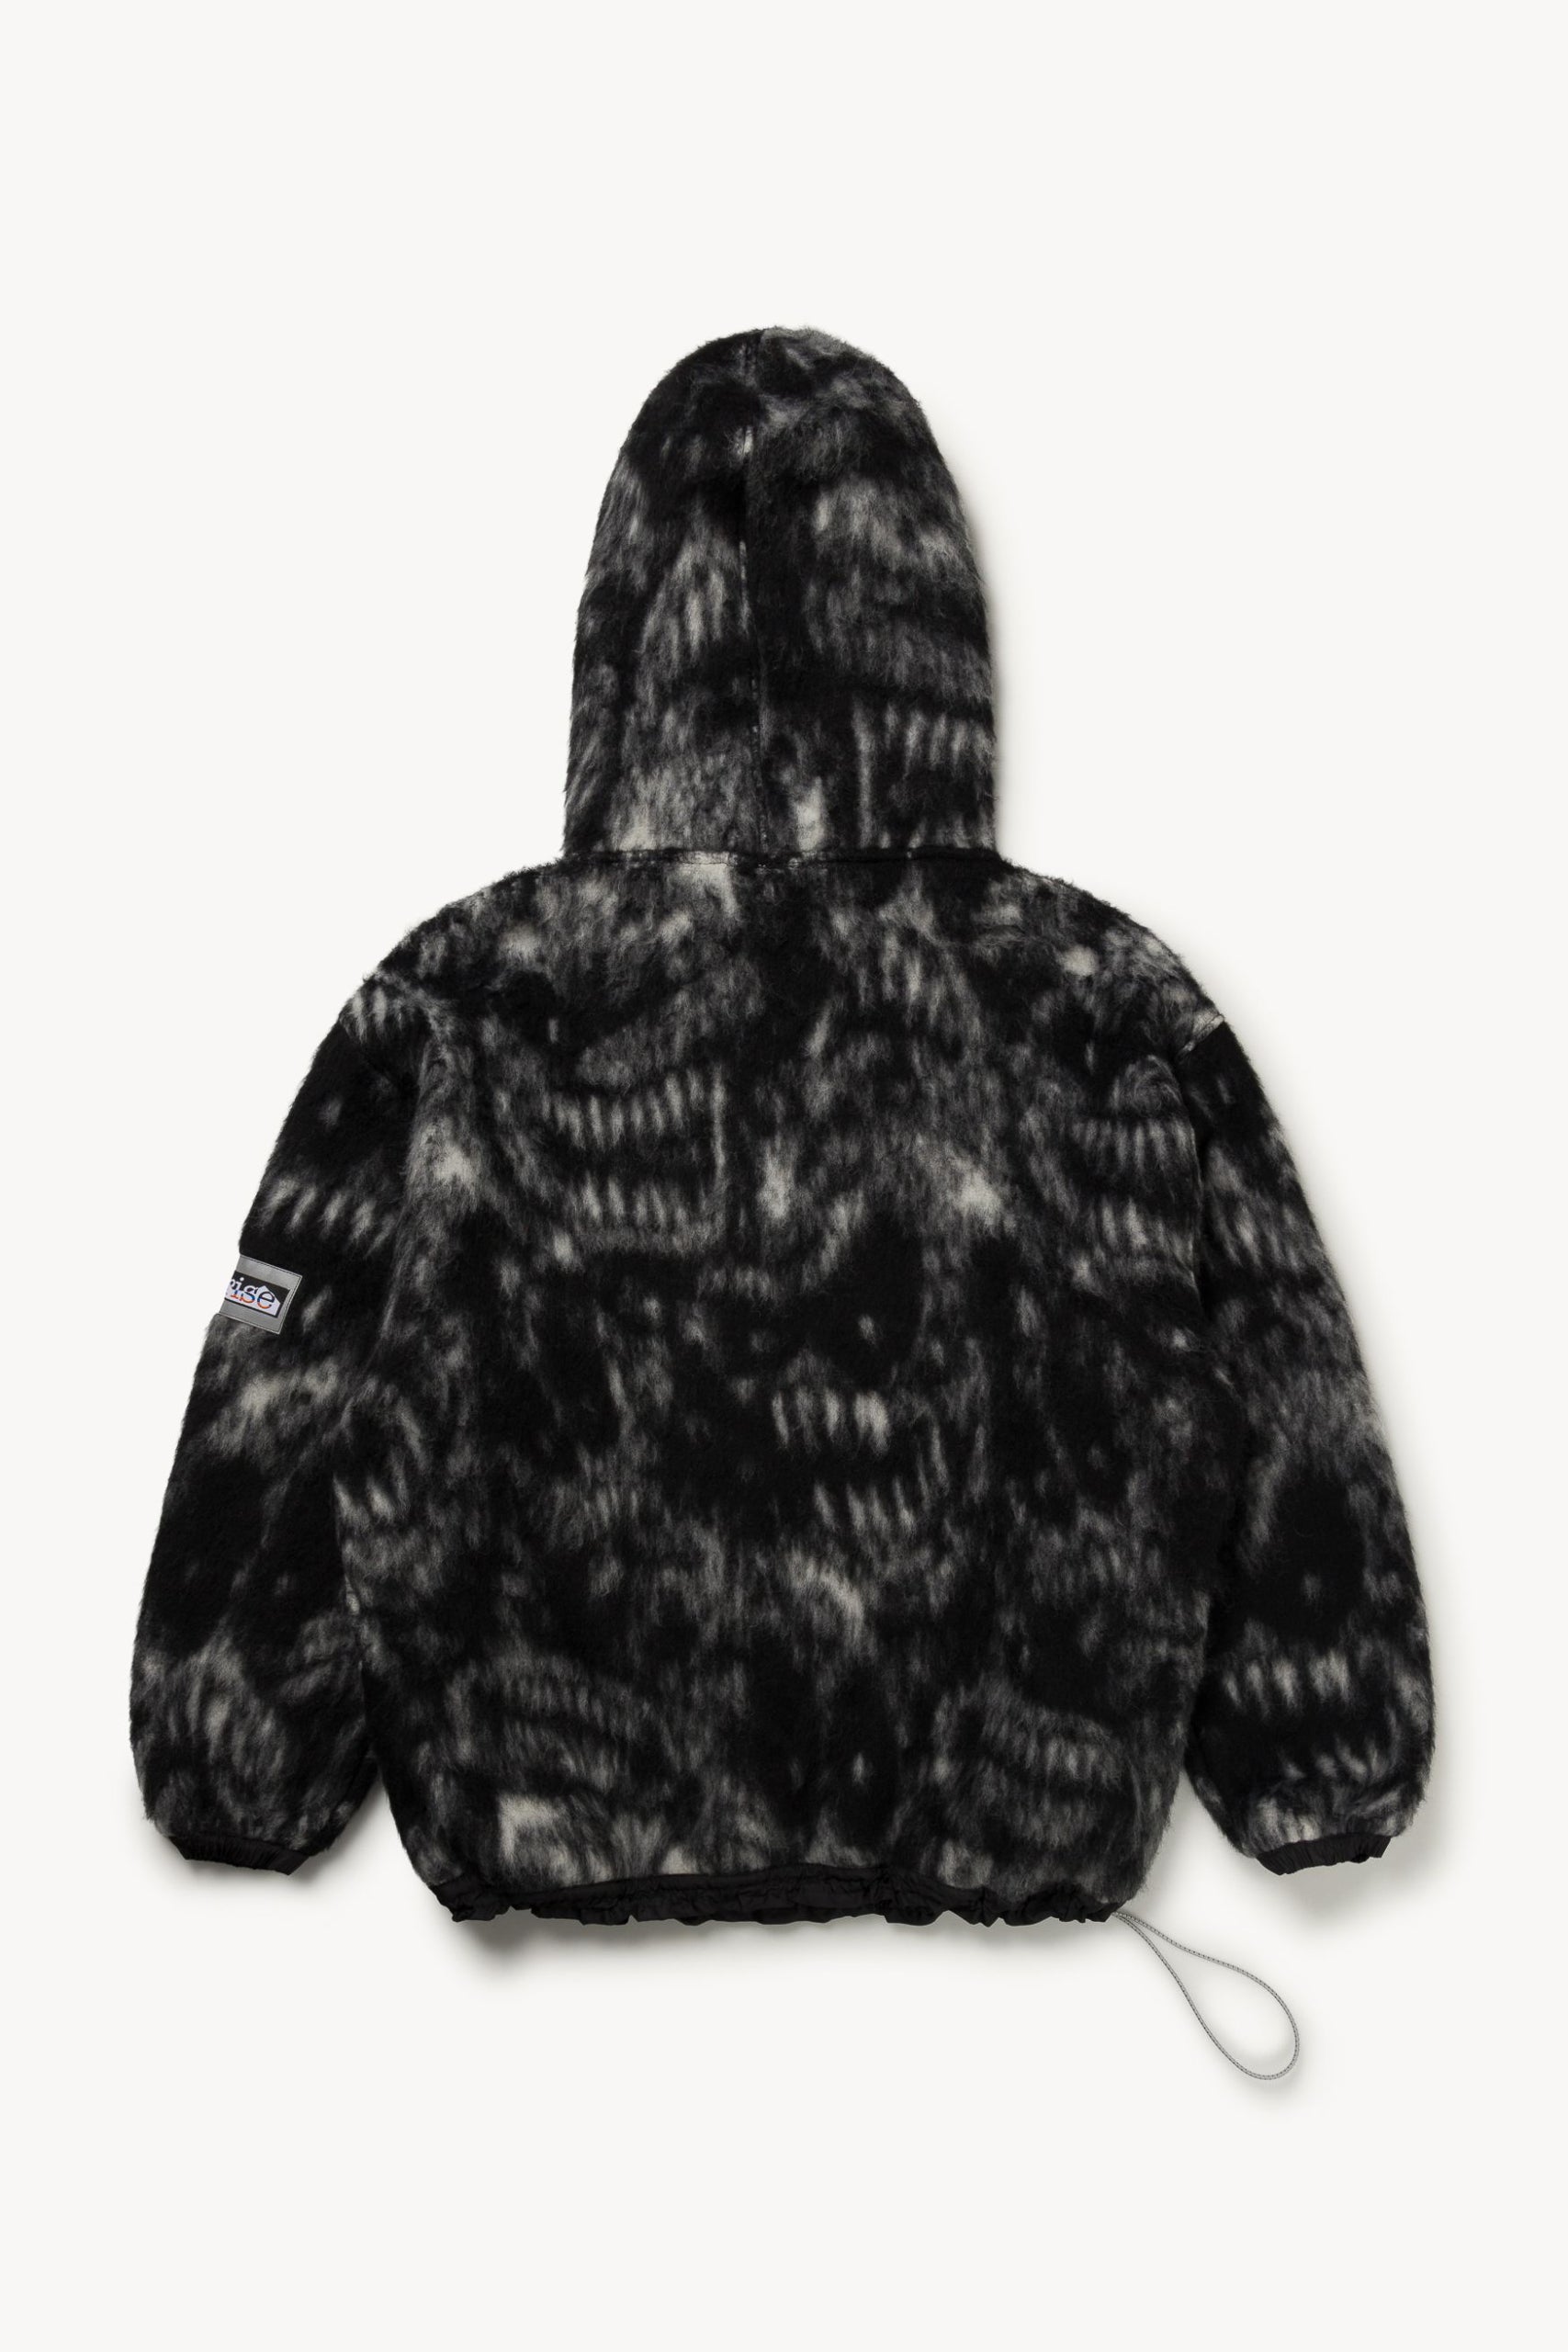 Oversized Monster Fleece Hoodie Black – Aries